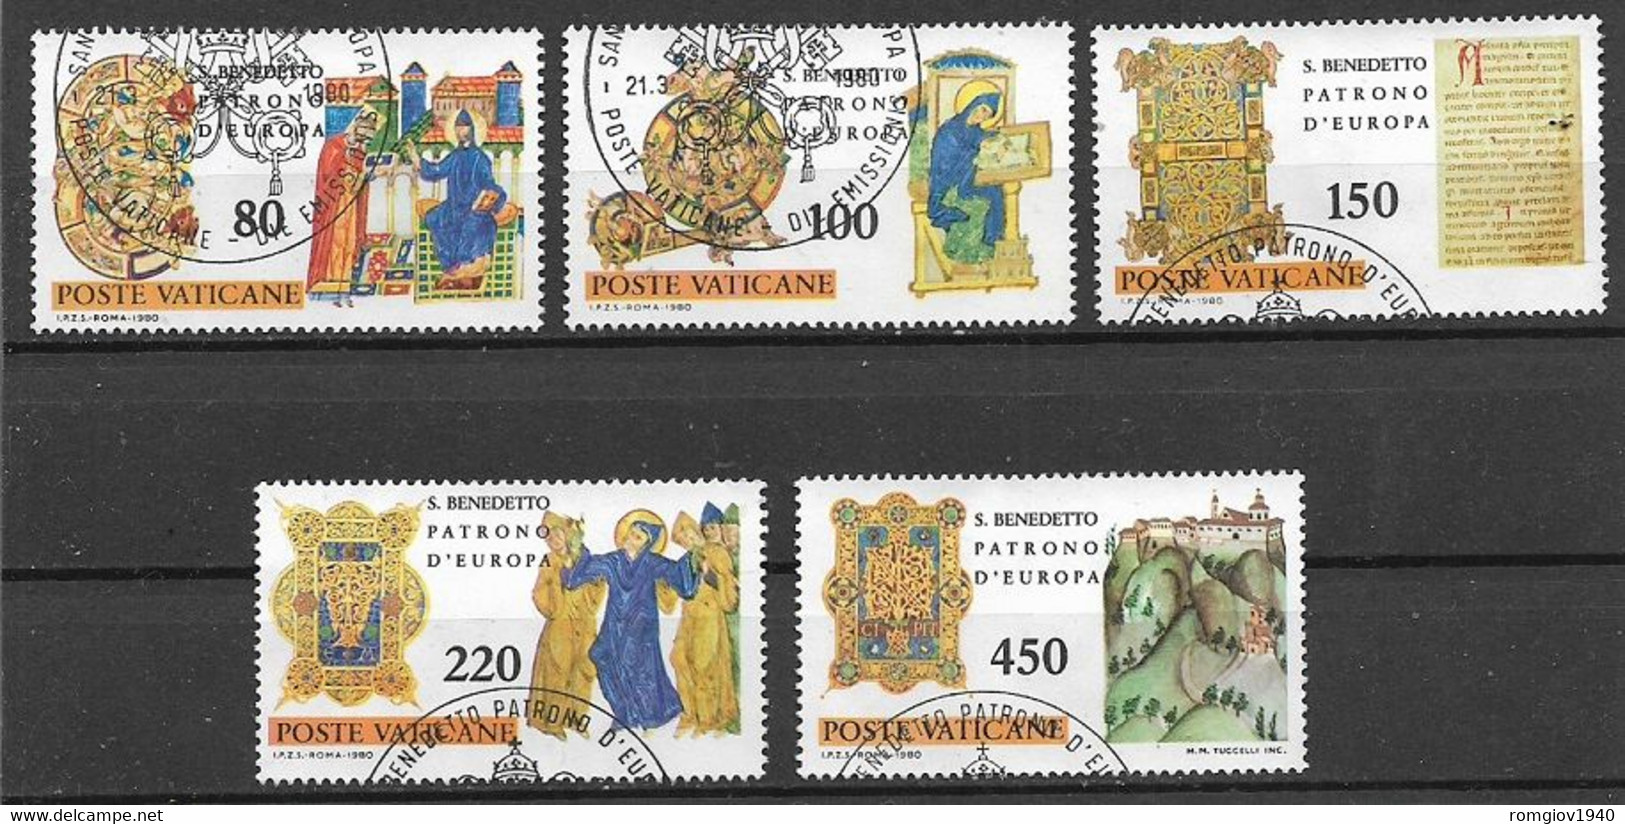 VATICANO 1980 CENTENARIO DELLA NASCITA DI S.BENEDETTO - PATRONO D'EUROPA SASS. 671-675 USATA VF - Used Stamps